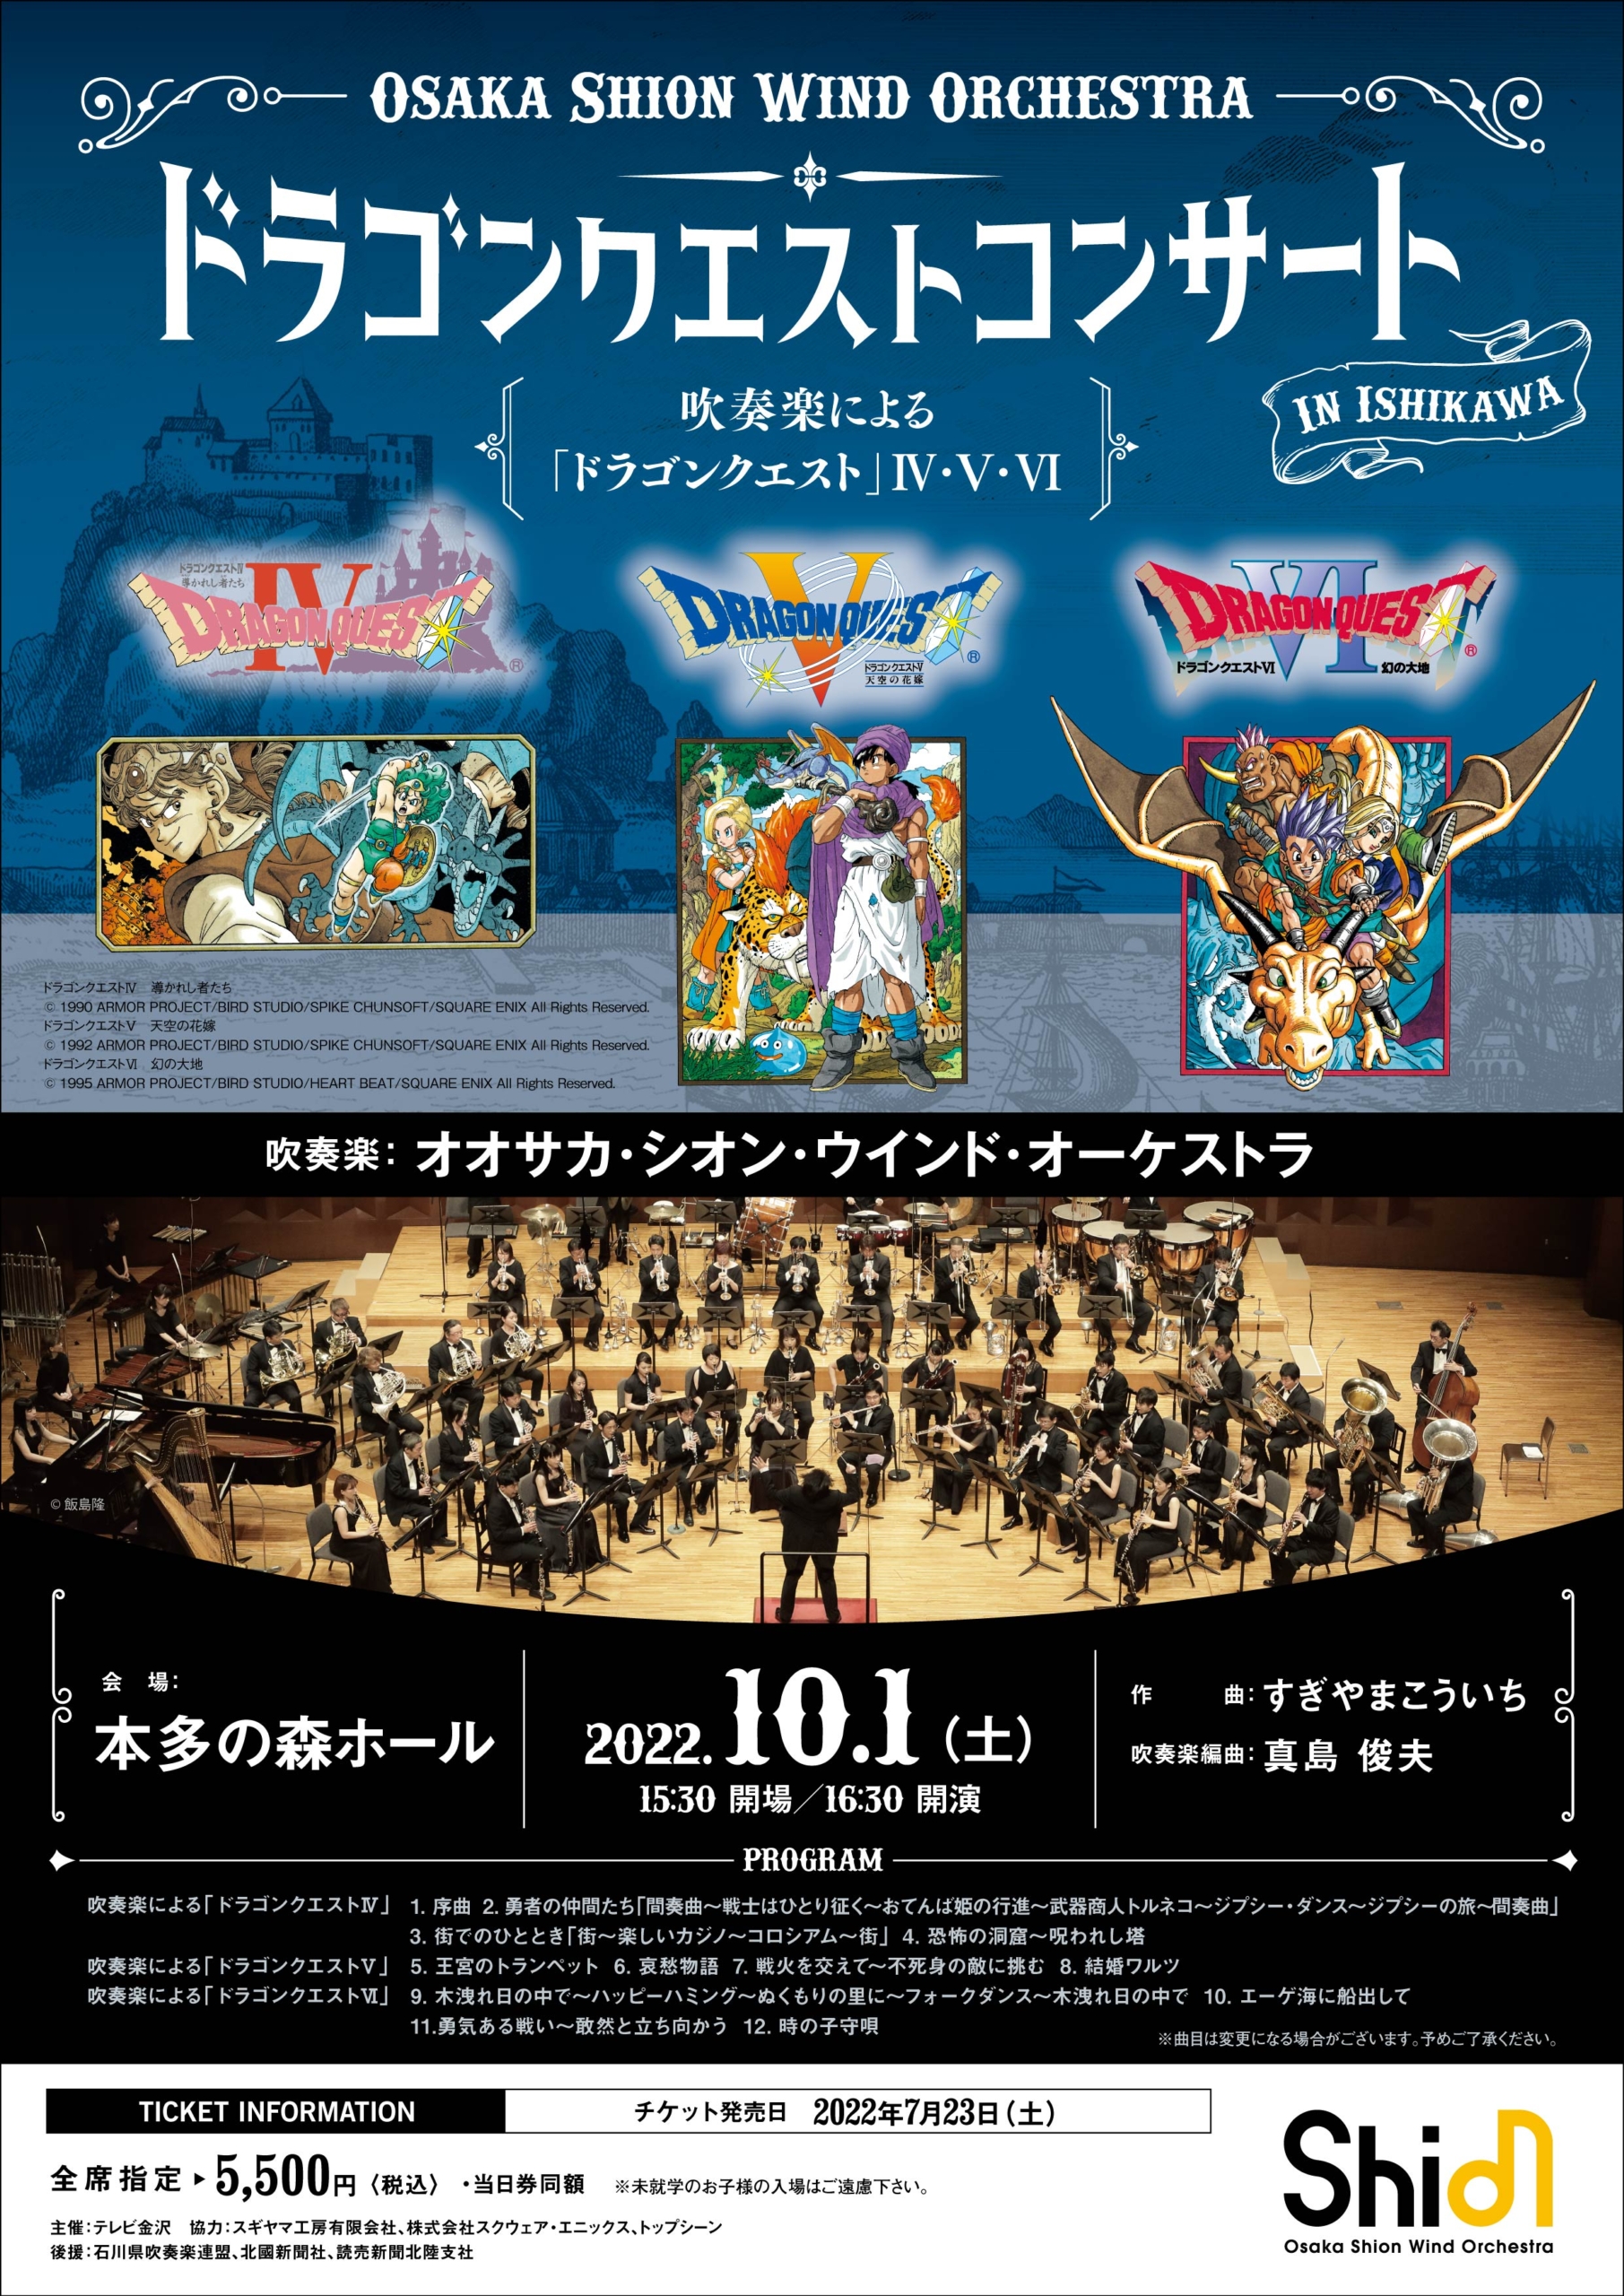 ドラゴンクエストコンサート In 石川 コンサート情報 Osaka Shion Wind Orchestra 大阪市音楽団